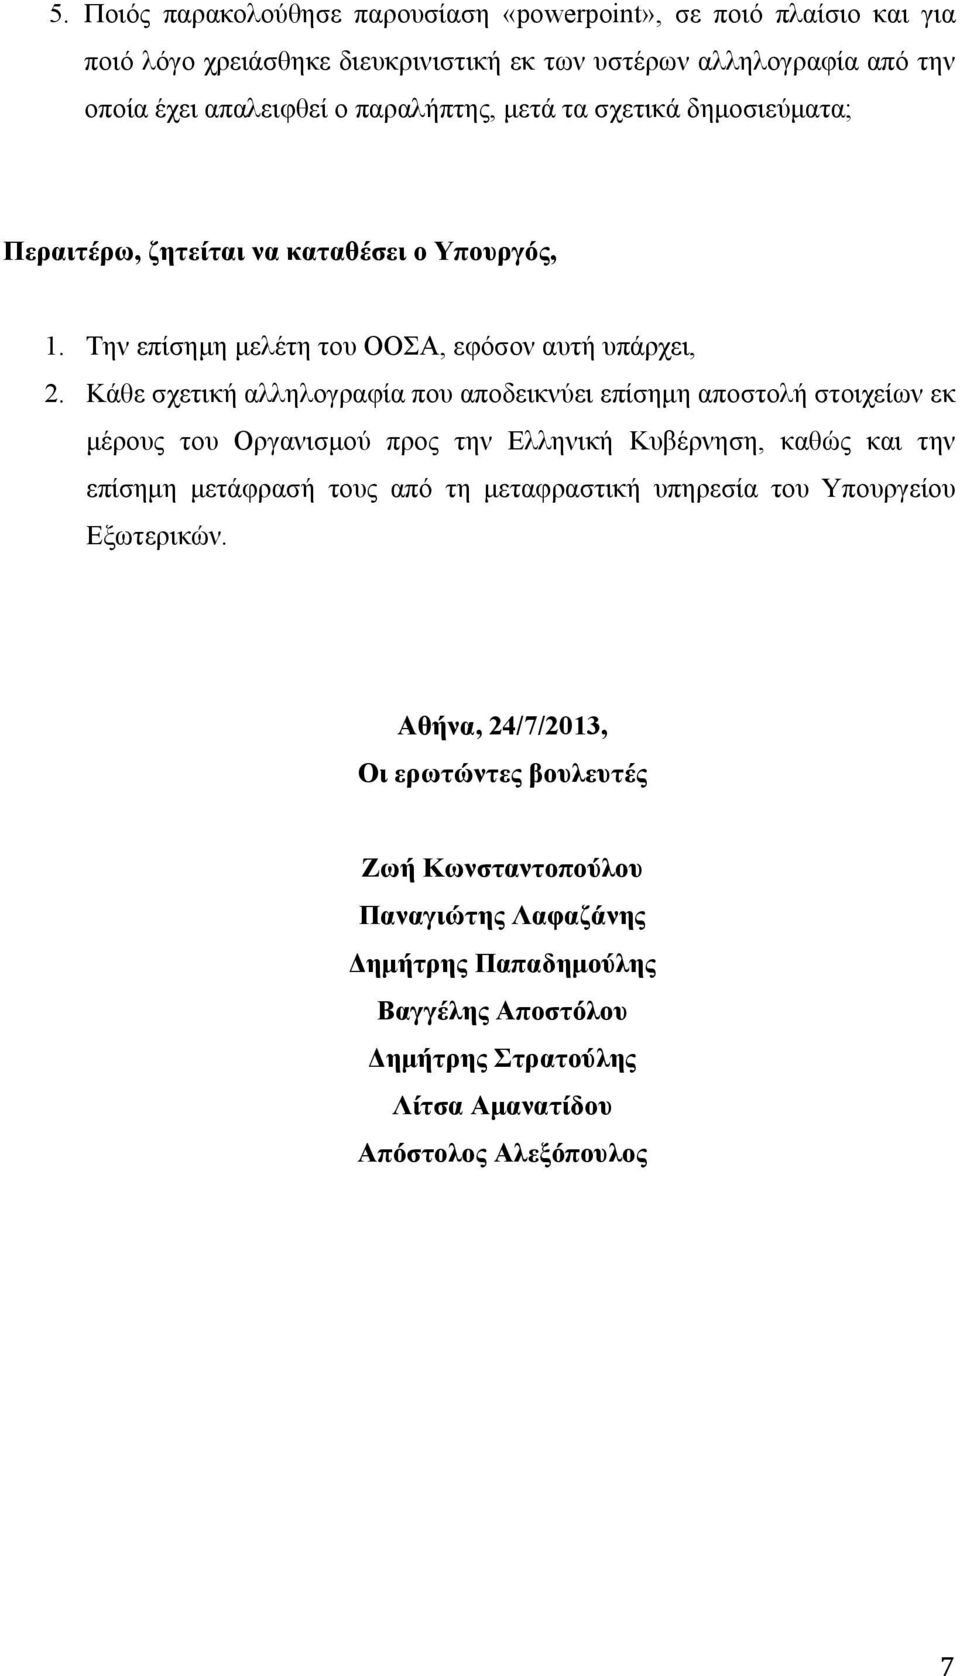 Κάθε σχετική αλληλογραφία που αποδεικνύει επίσημη αποστολή στοιχείων εκ μέρους του Οργανισμού προς την Ελληνική Κυβέρνηση, καθώς και την επίσημη μετάφρασή τους από τη